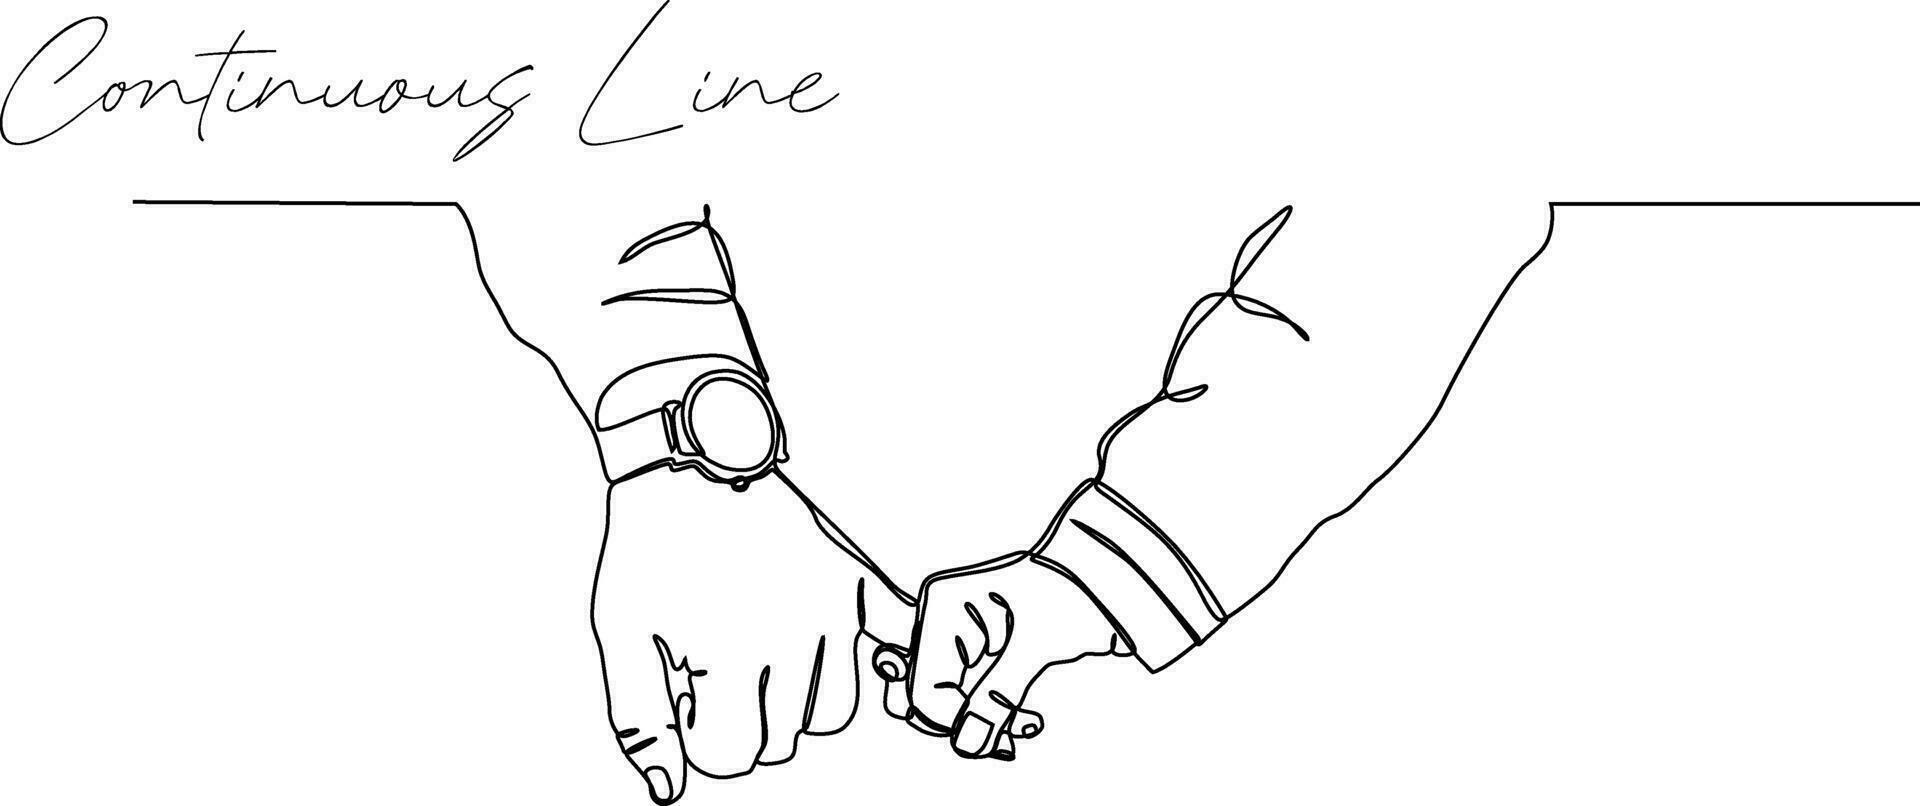 continuo línea ilustración de manos participación manos vector